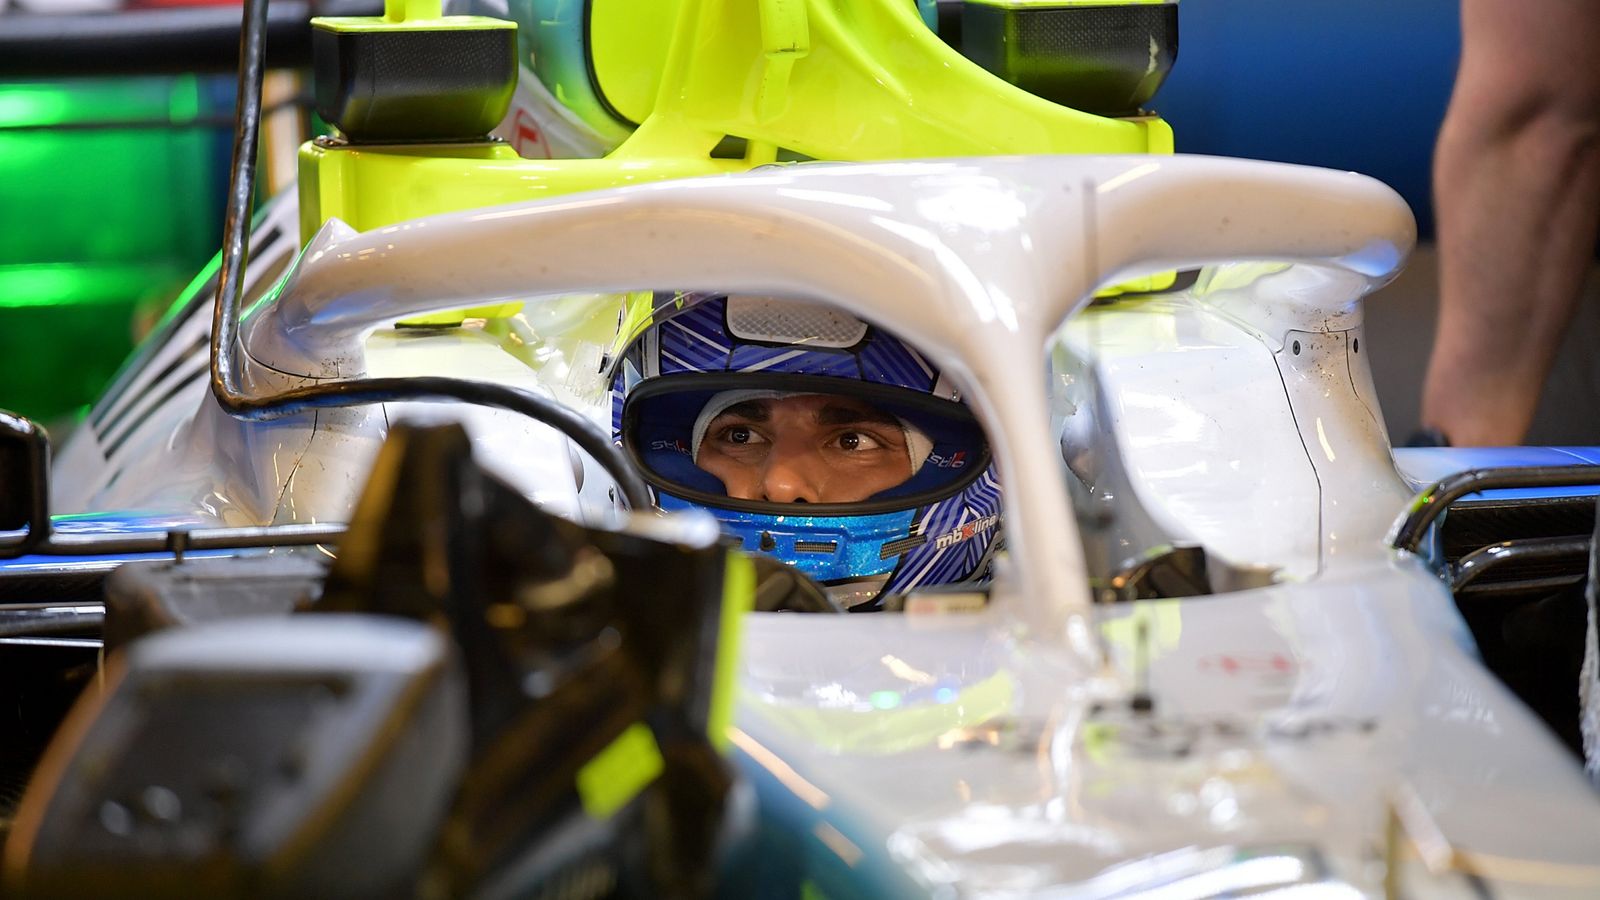 Formel 1 Nicholas Latifi als neues Gesicht für die Saison 2020 Formel 1 News Sky Sport